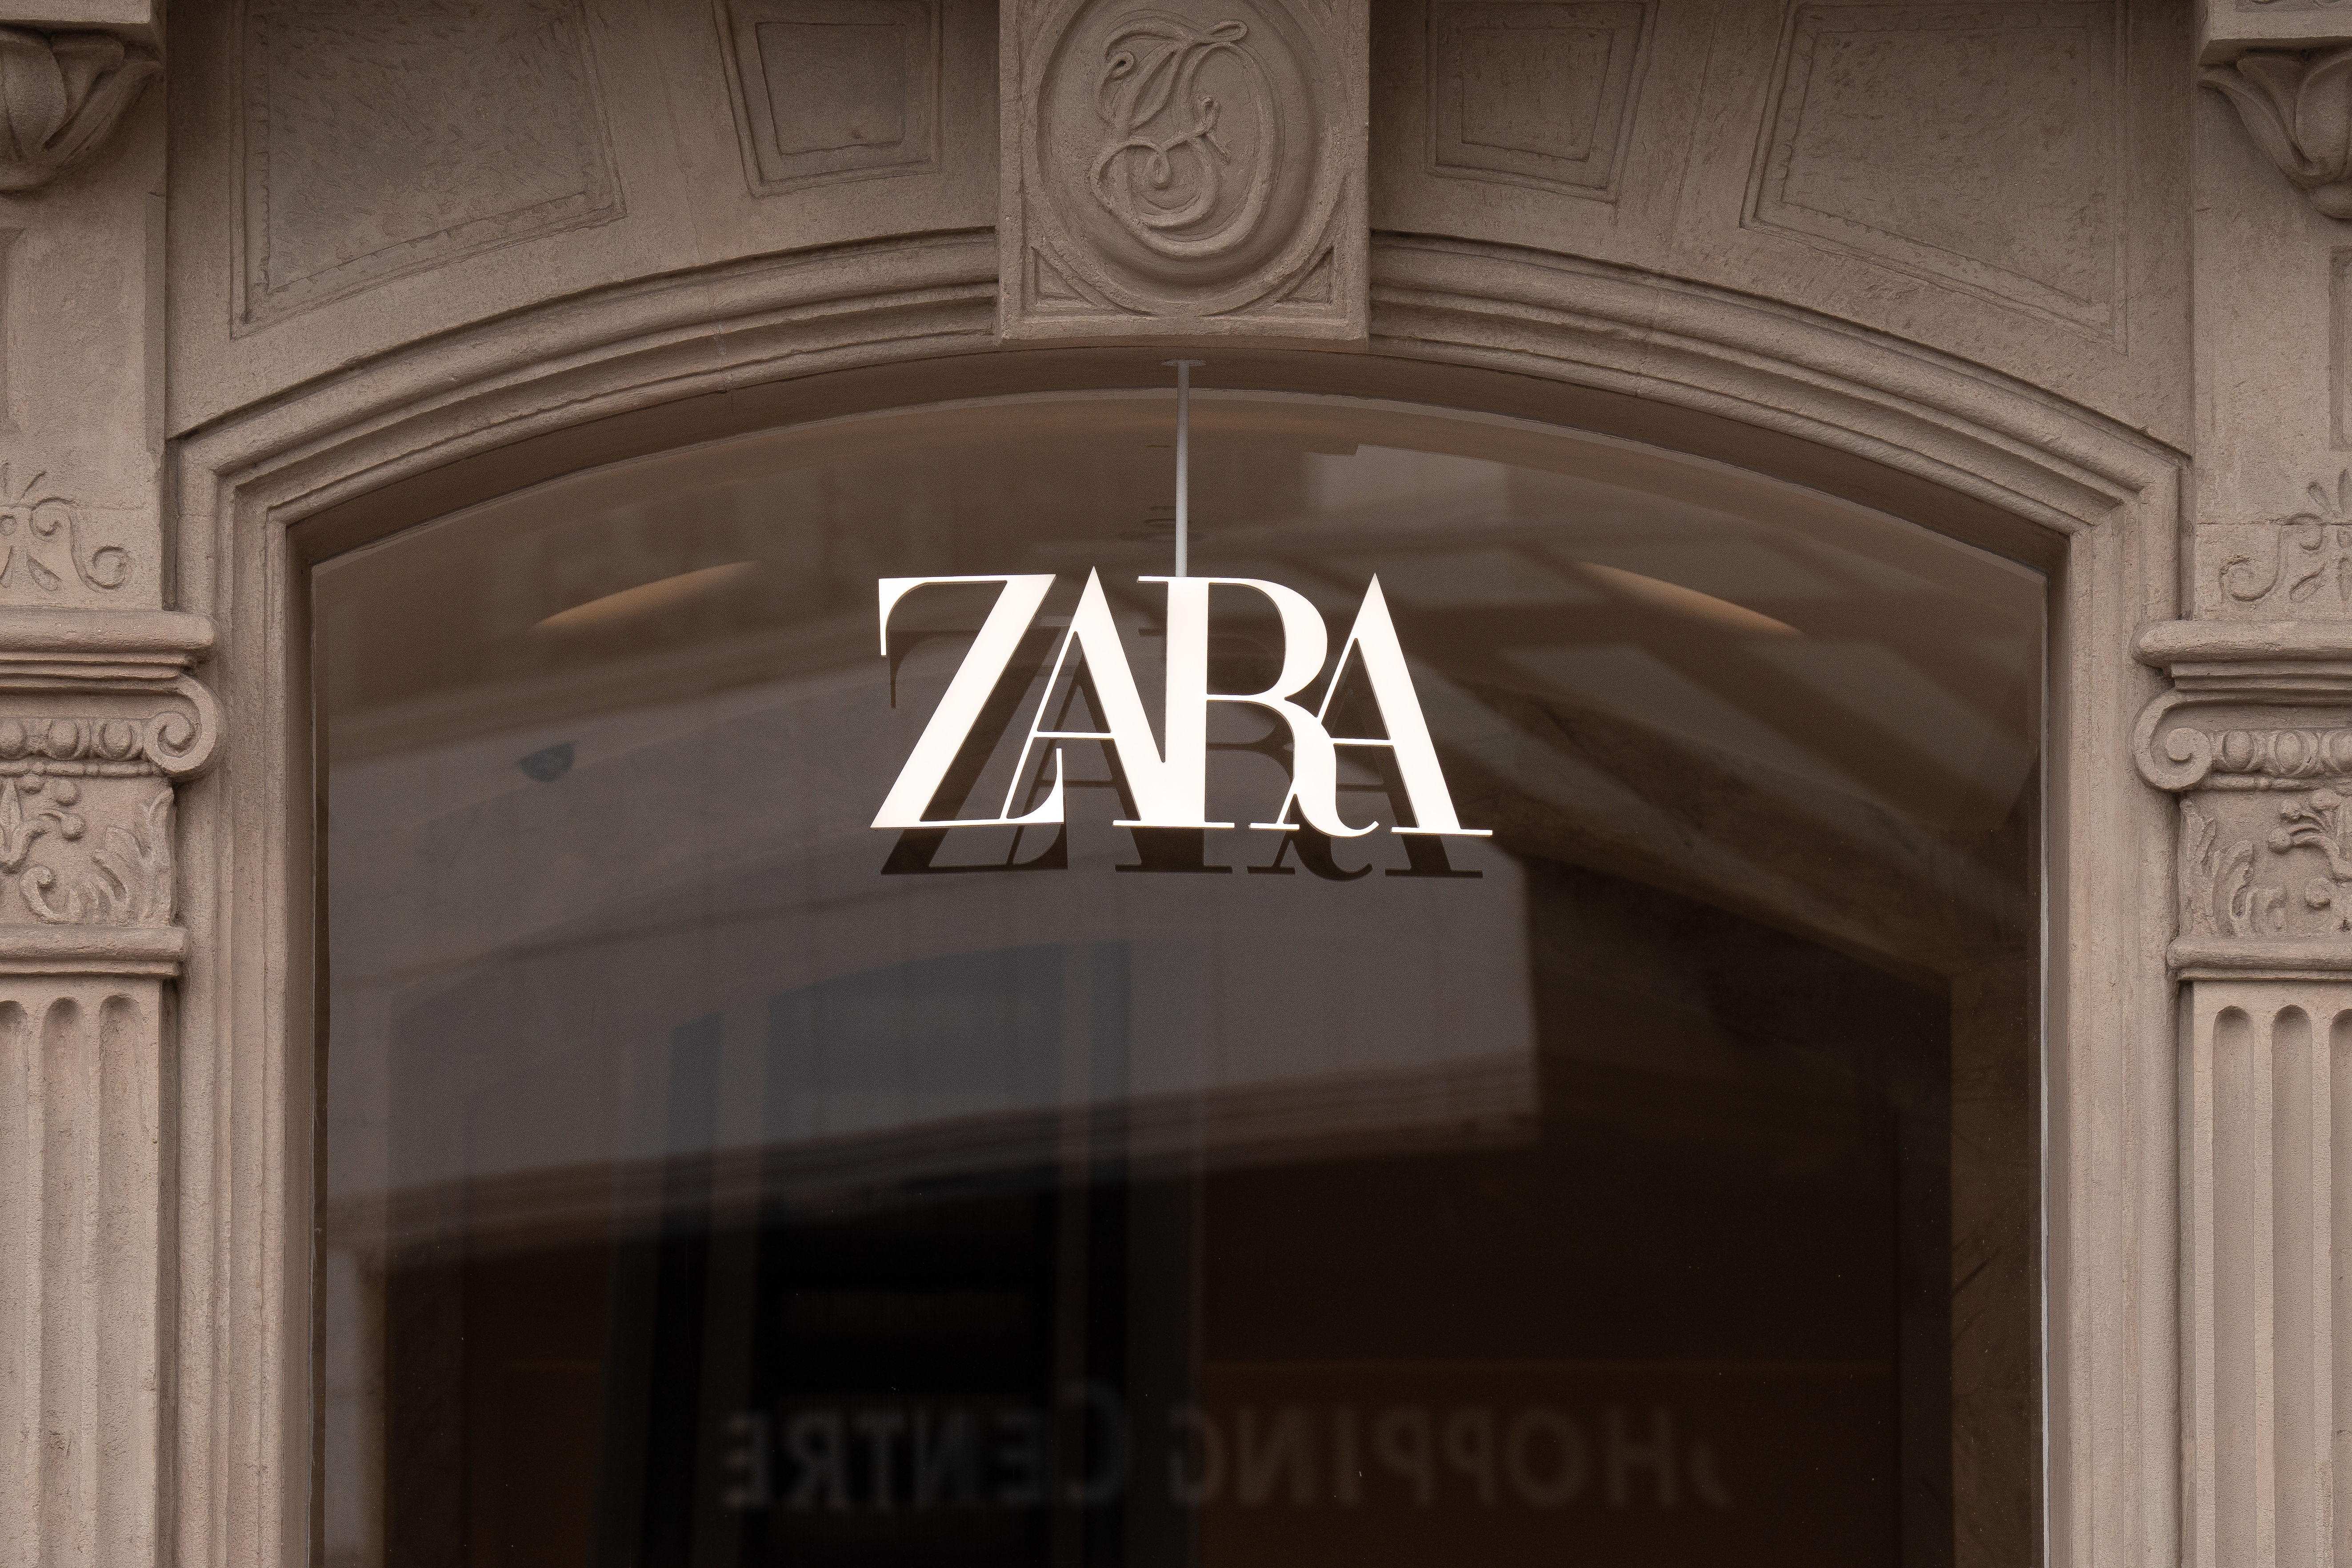 El complement estrella entre les dones de Londres és a Zara